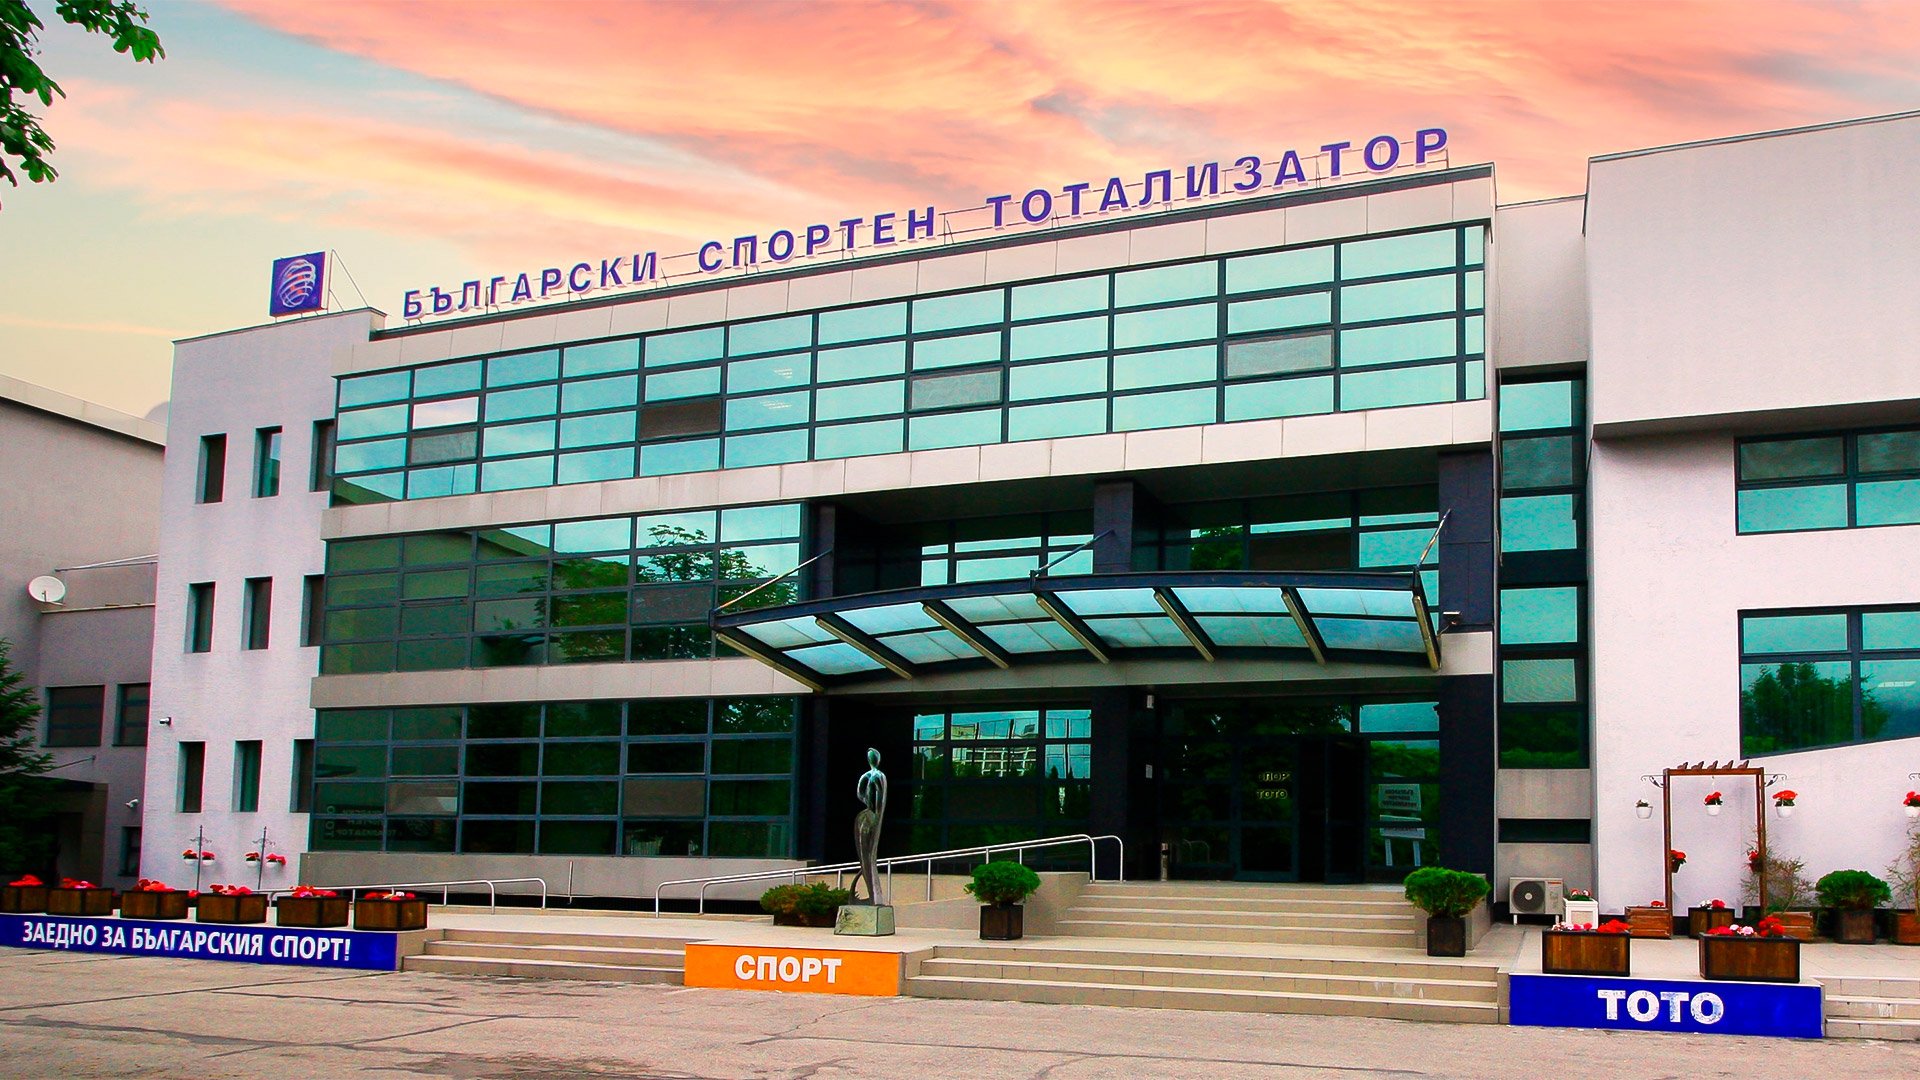 Георги Тарликов е назначен за нов изпълнителен директор на българската спортна компания Тотализатор като част от реформата в управлението